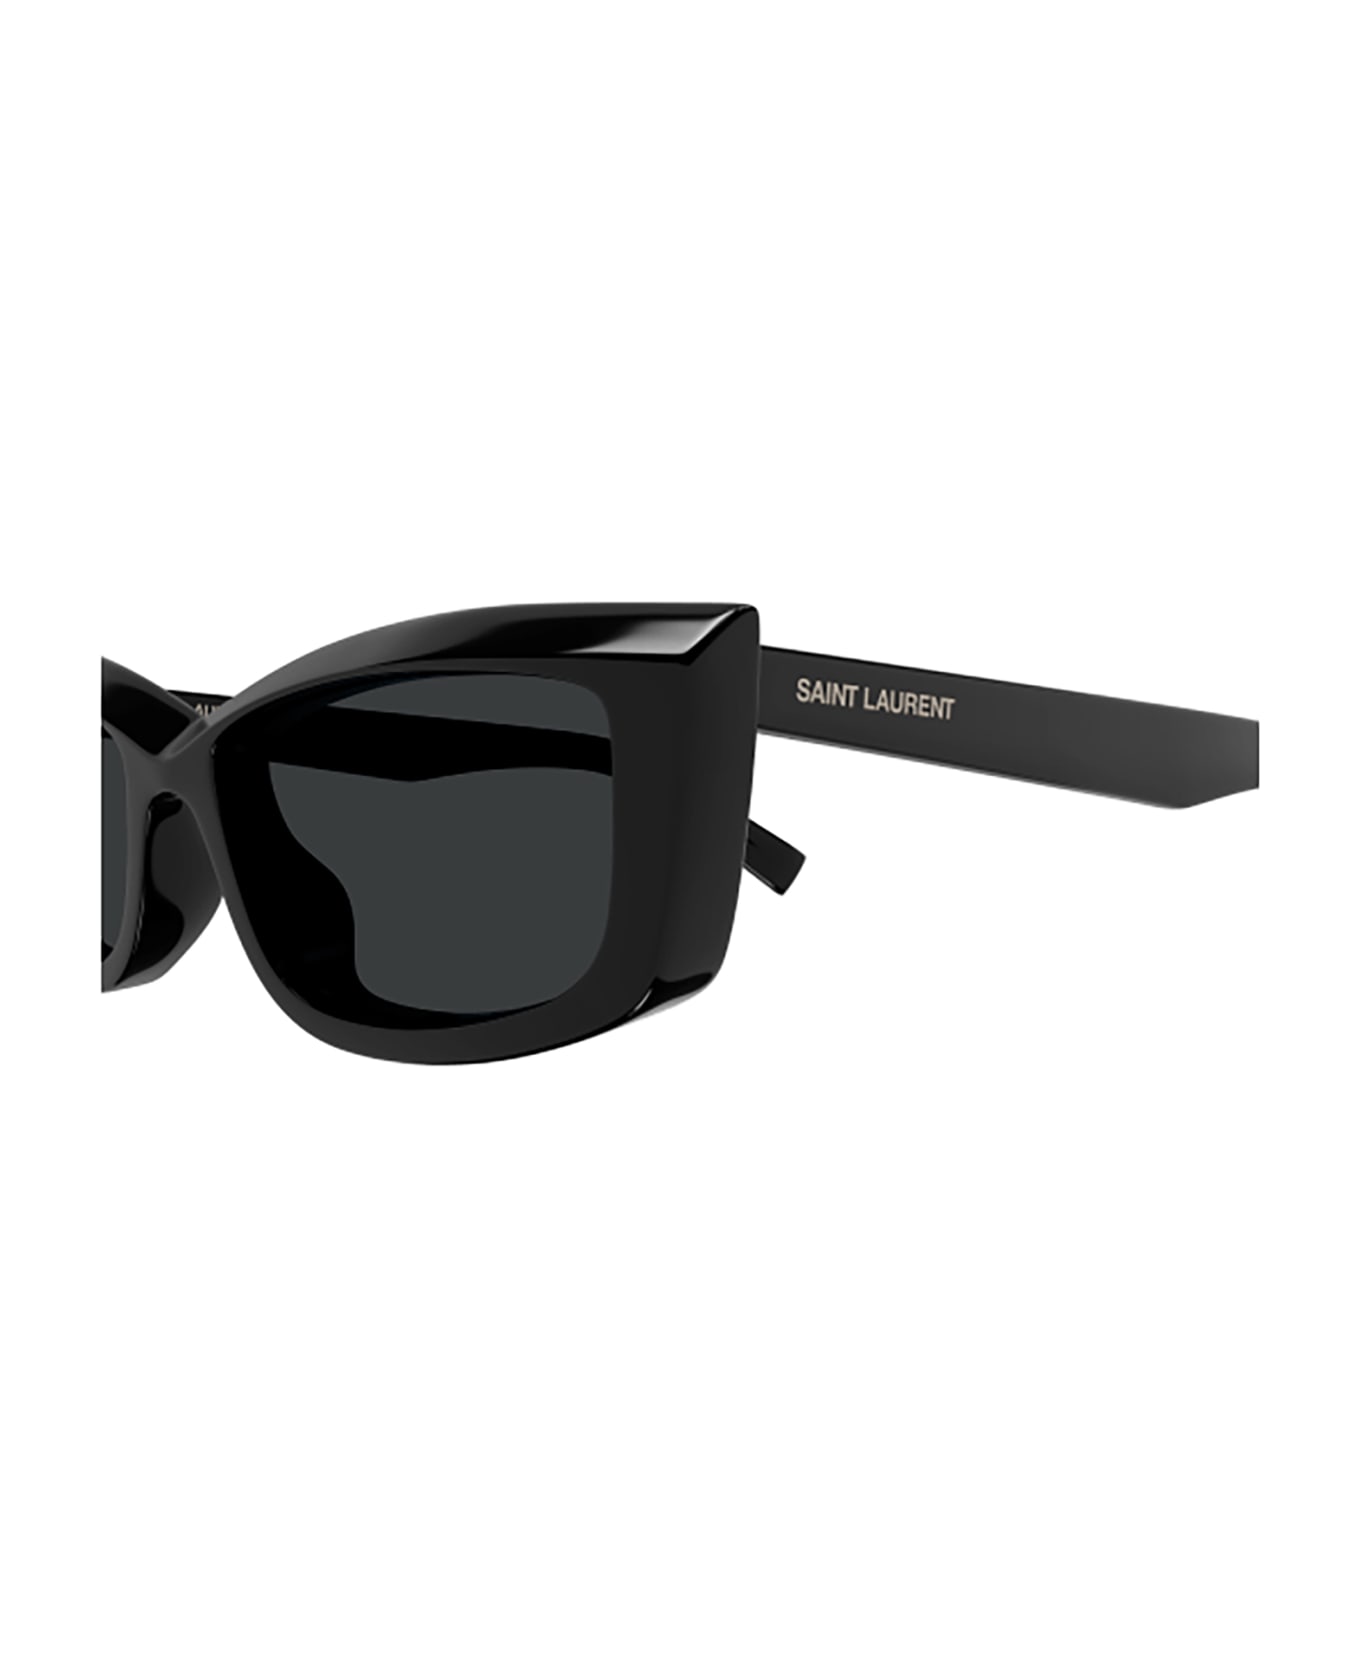 Saint Laurent Eyewear SL 658 Sunglasses - Black Black Black